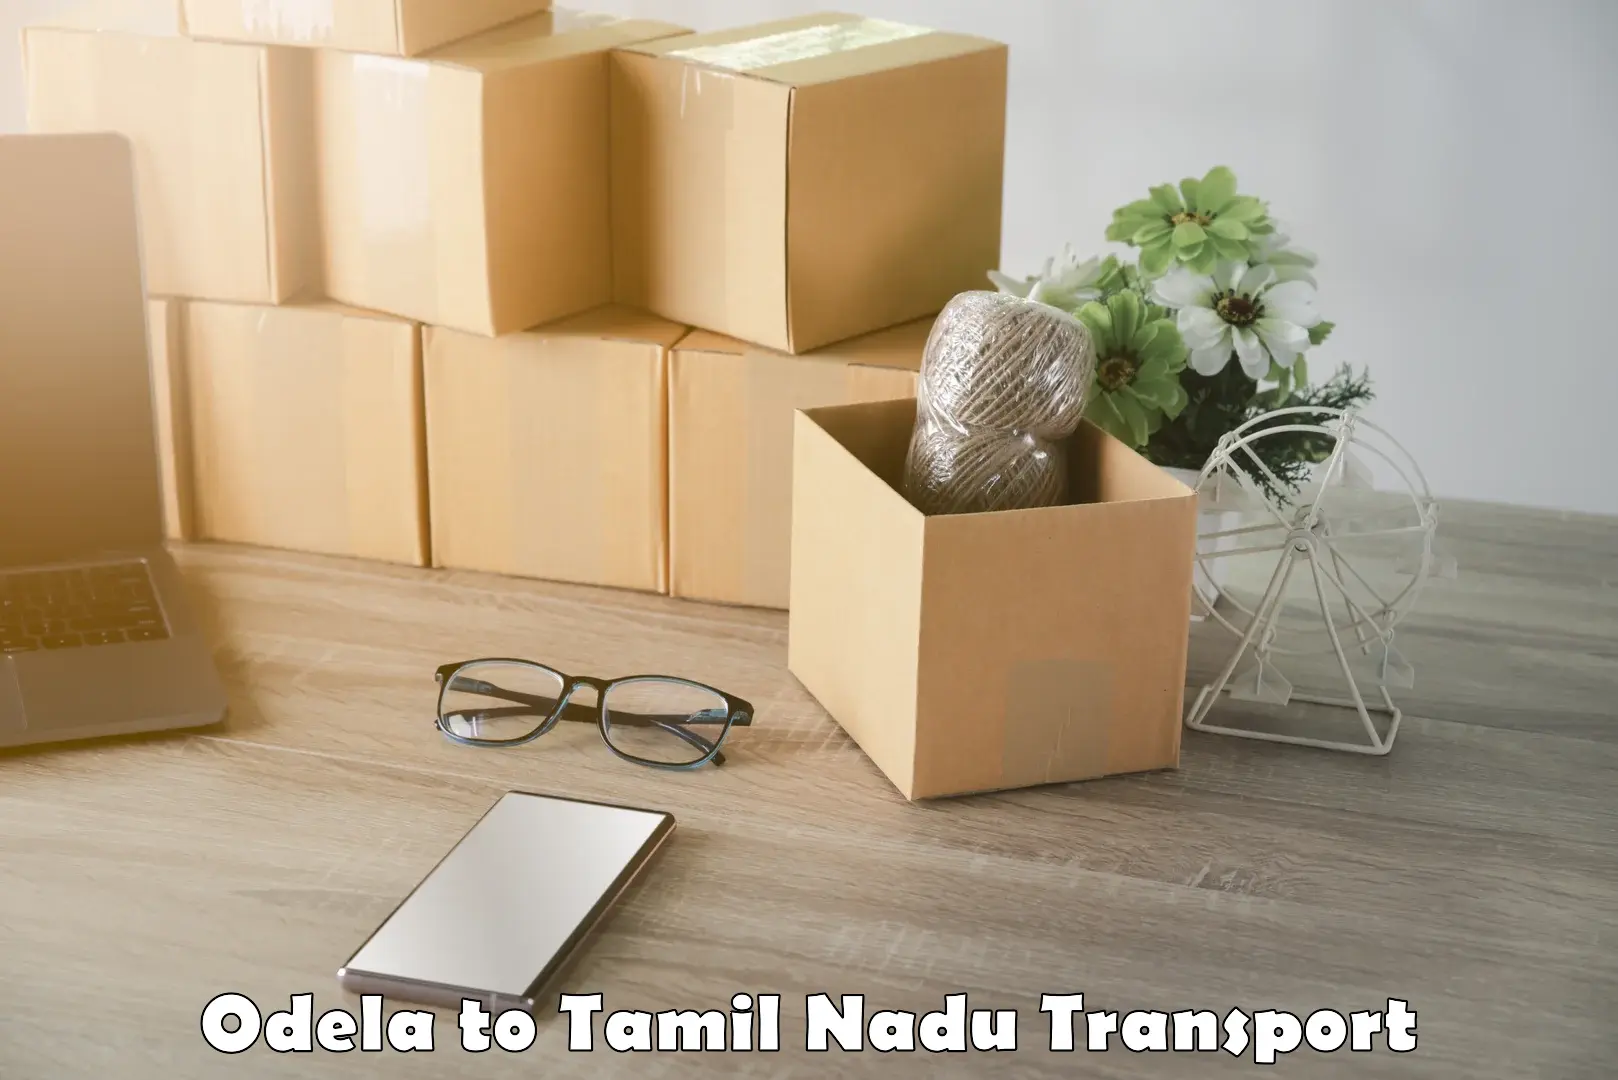 Nearest transport service Odela to Tamil Nadu